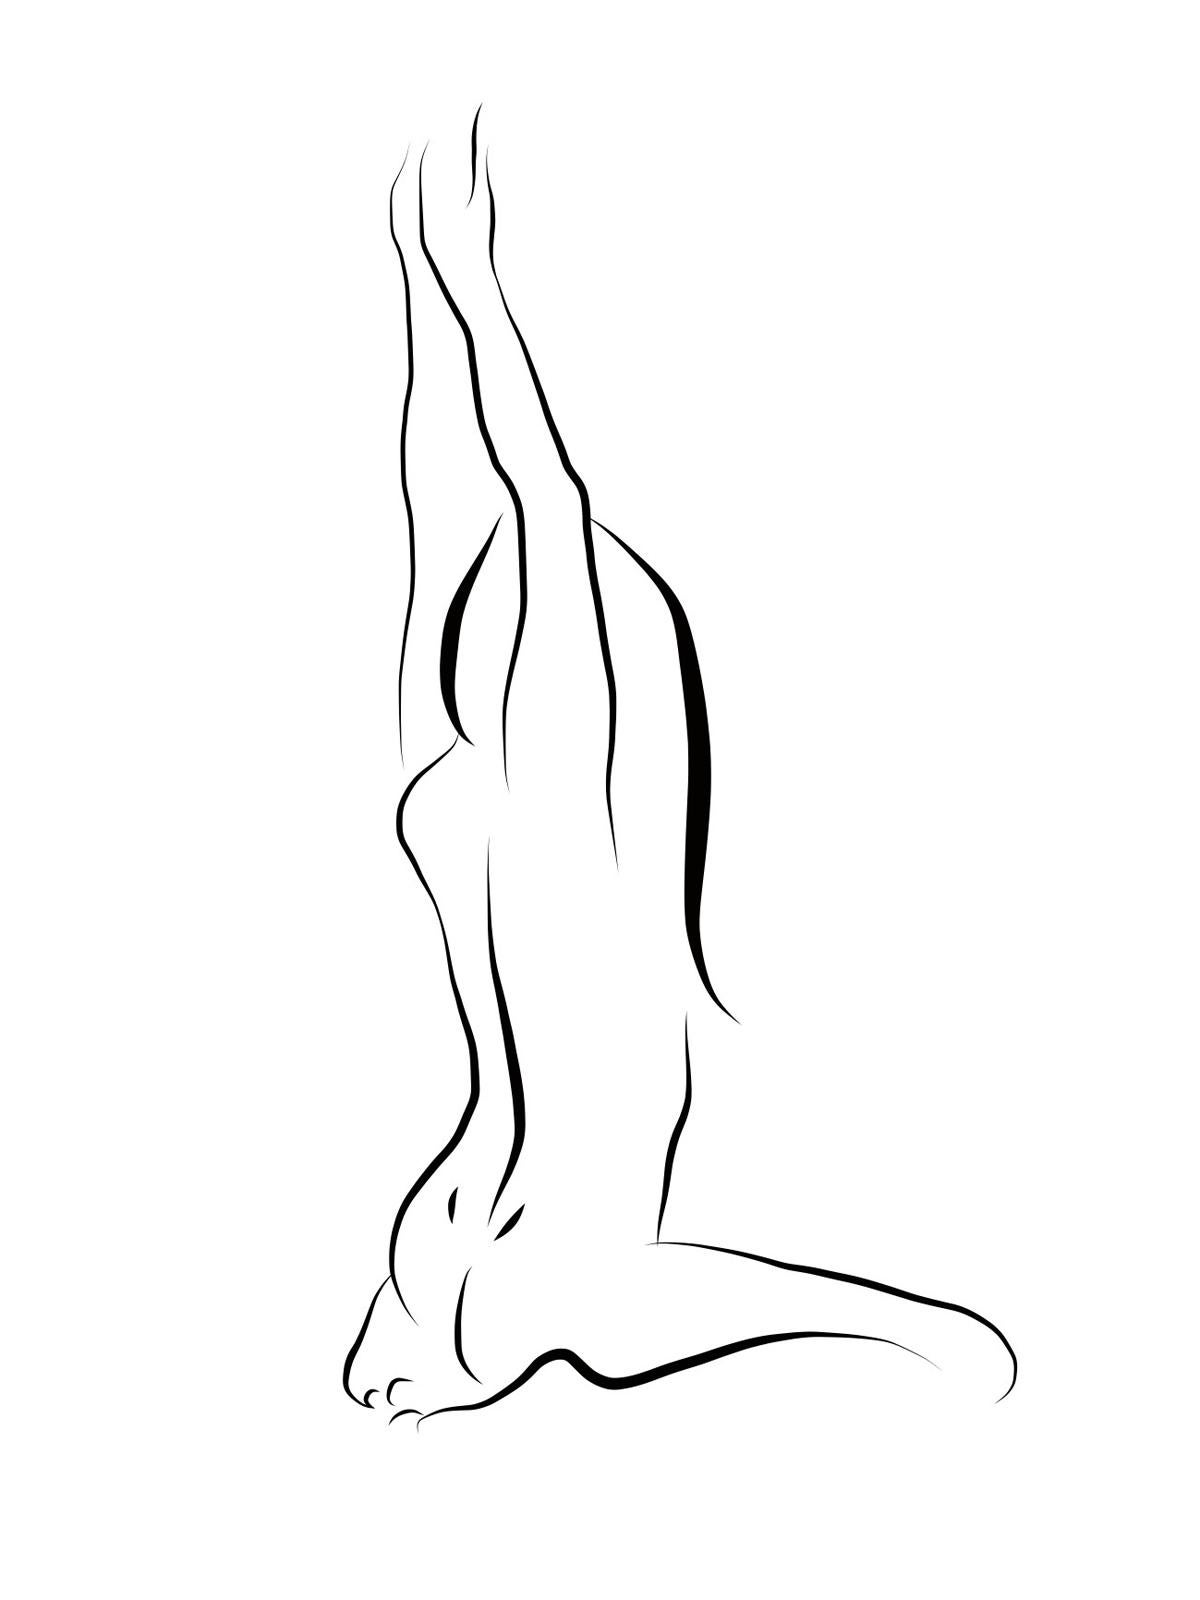 Michael Binkley Nude Print - Haiku #49, 1/50 - Digital Vector Drawing Kneeling Female Nude Woman Figure